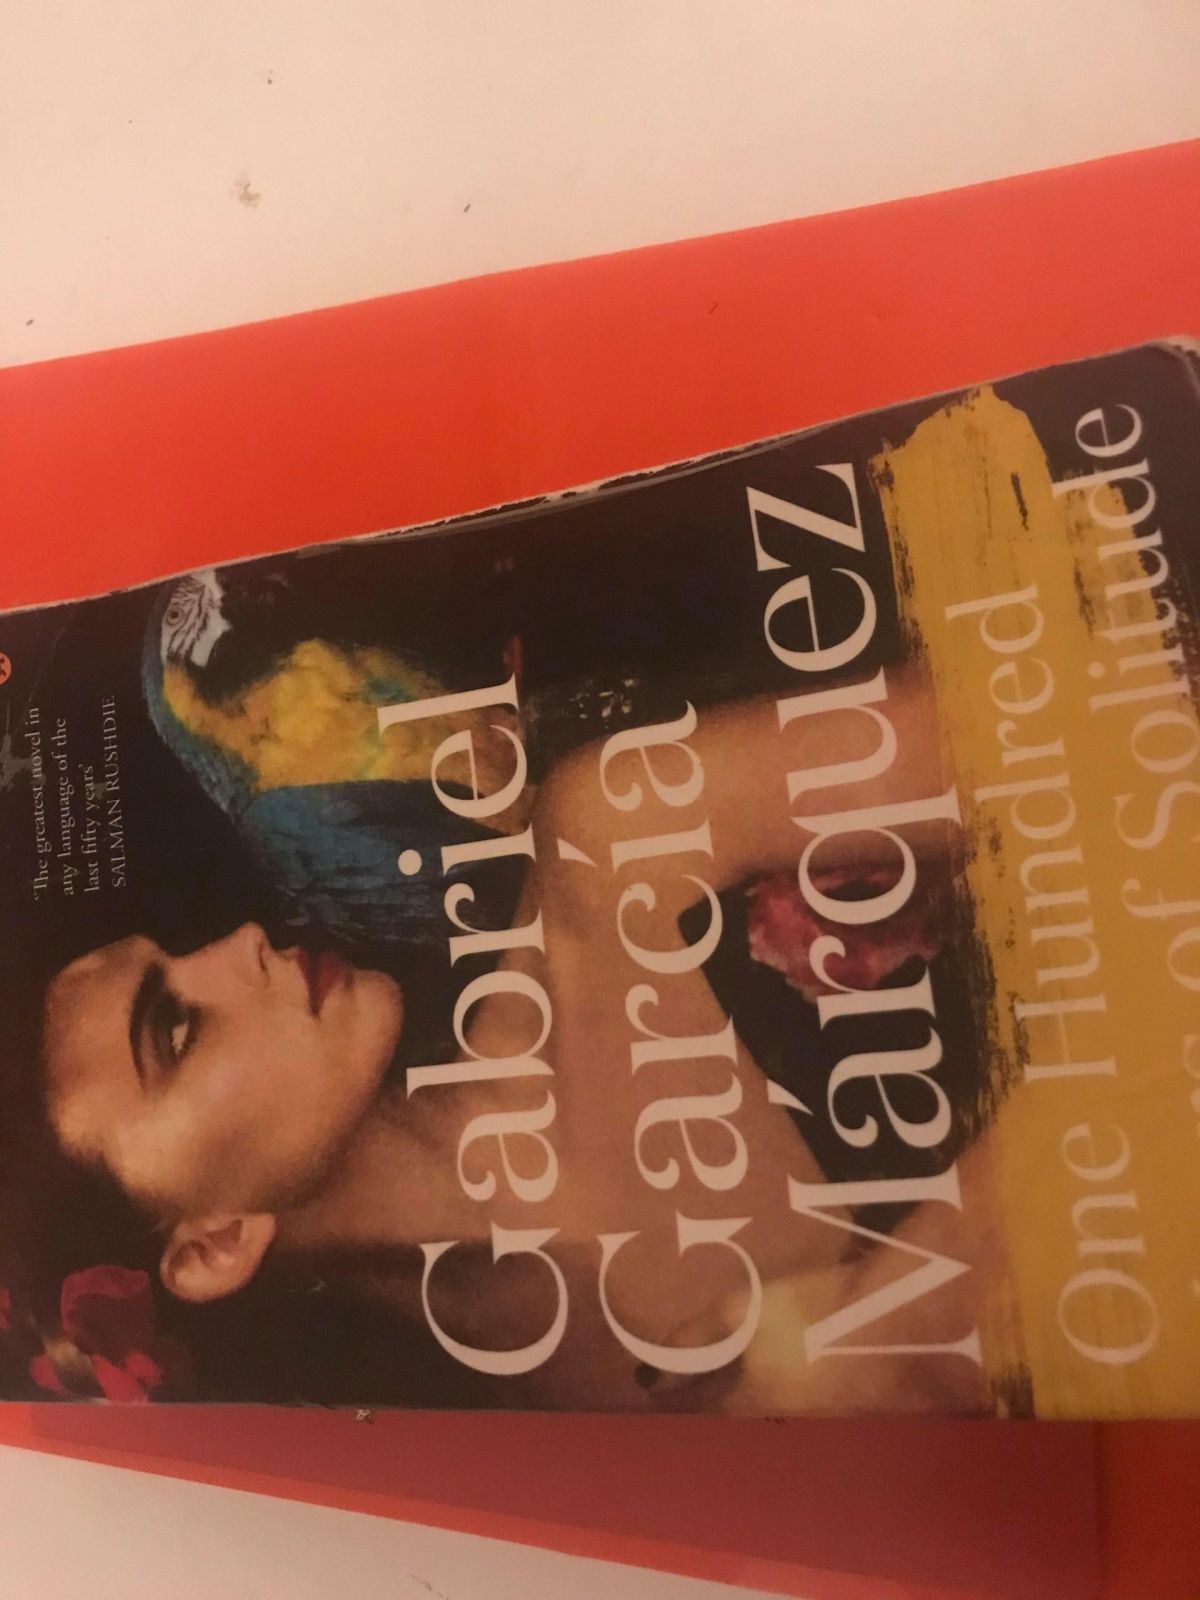 Gabriel Garcia Márquez: Love and solitude